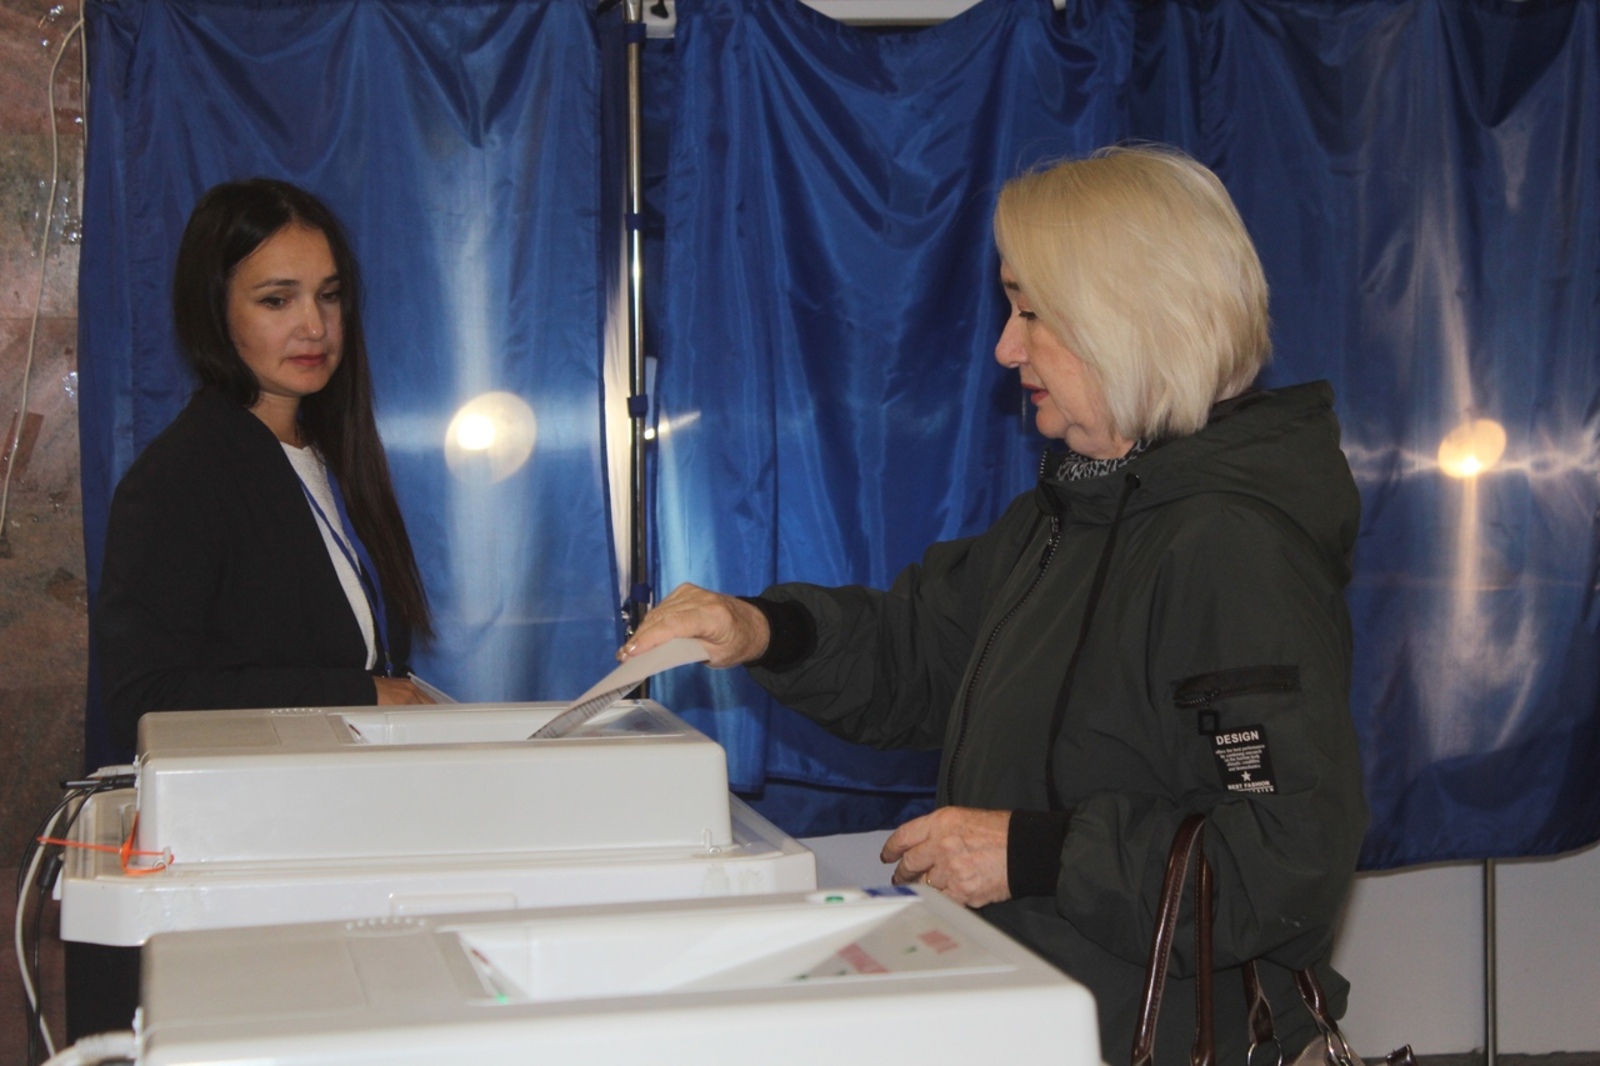 16,89 процента избирателей по состоянию на 12 часов проголосовали в Башкирии